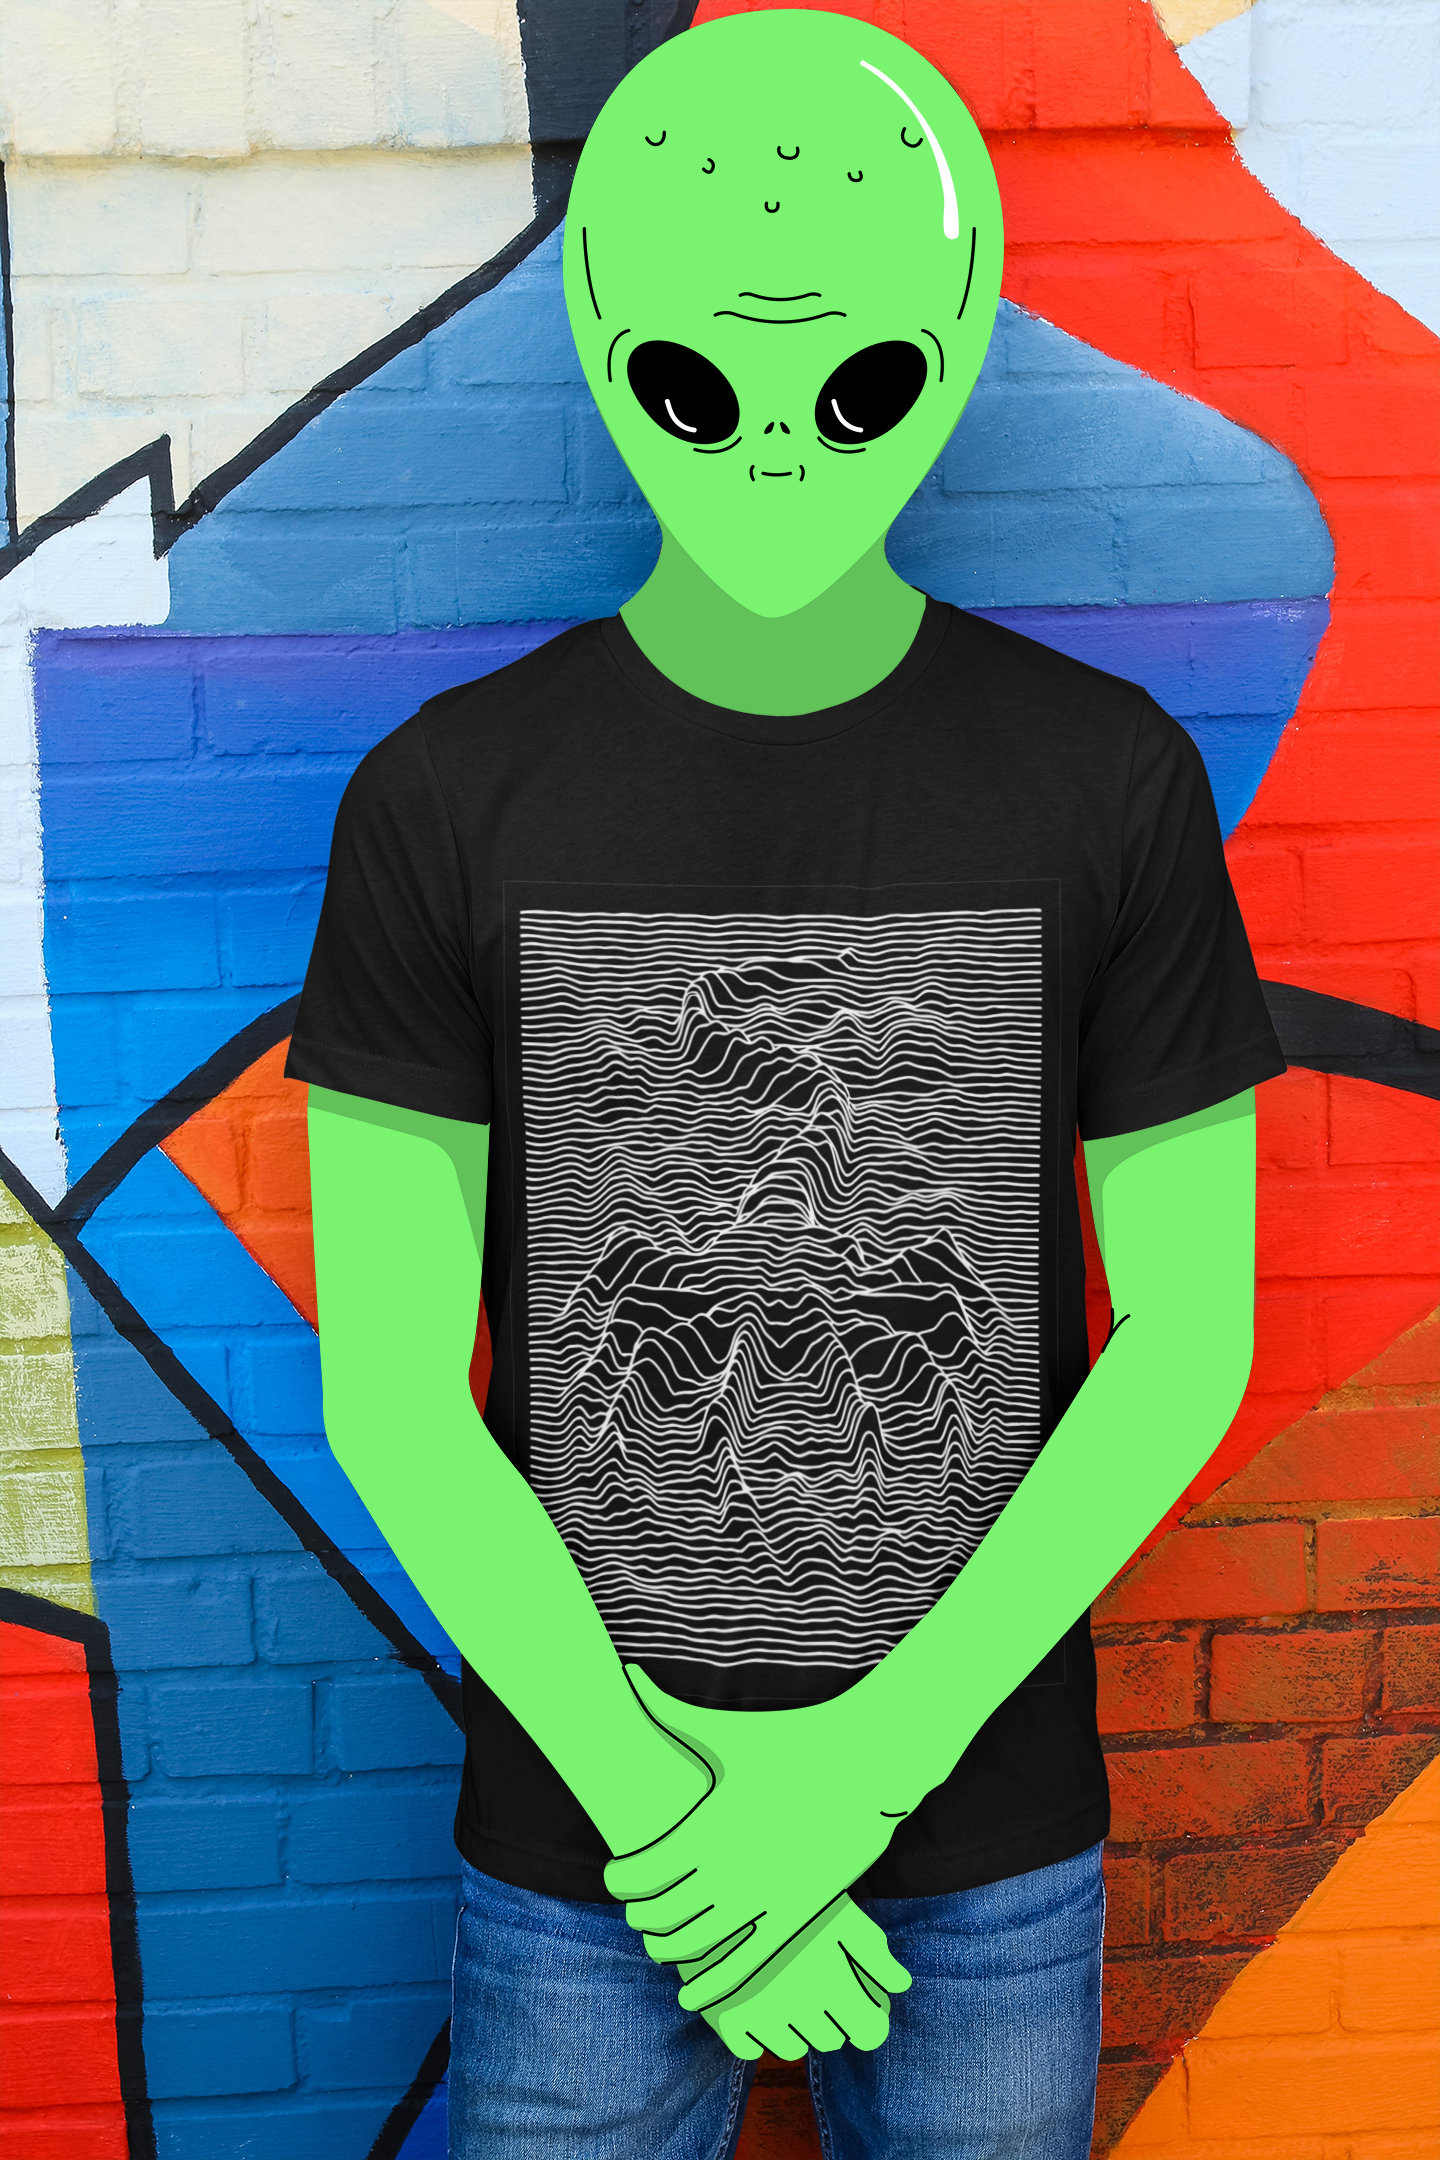 LV-426 2122 Alien Inspired Unisex Tee Shirt | Xenomorph Fan Tee | Gift for  Horror Fan | Film Buff | Sci Fi Movie | Weaver